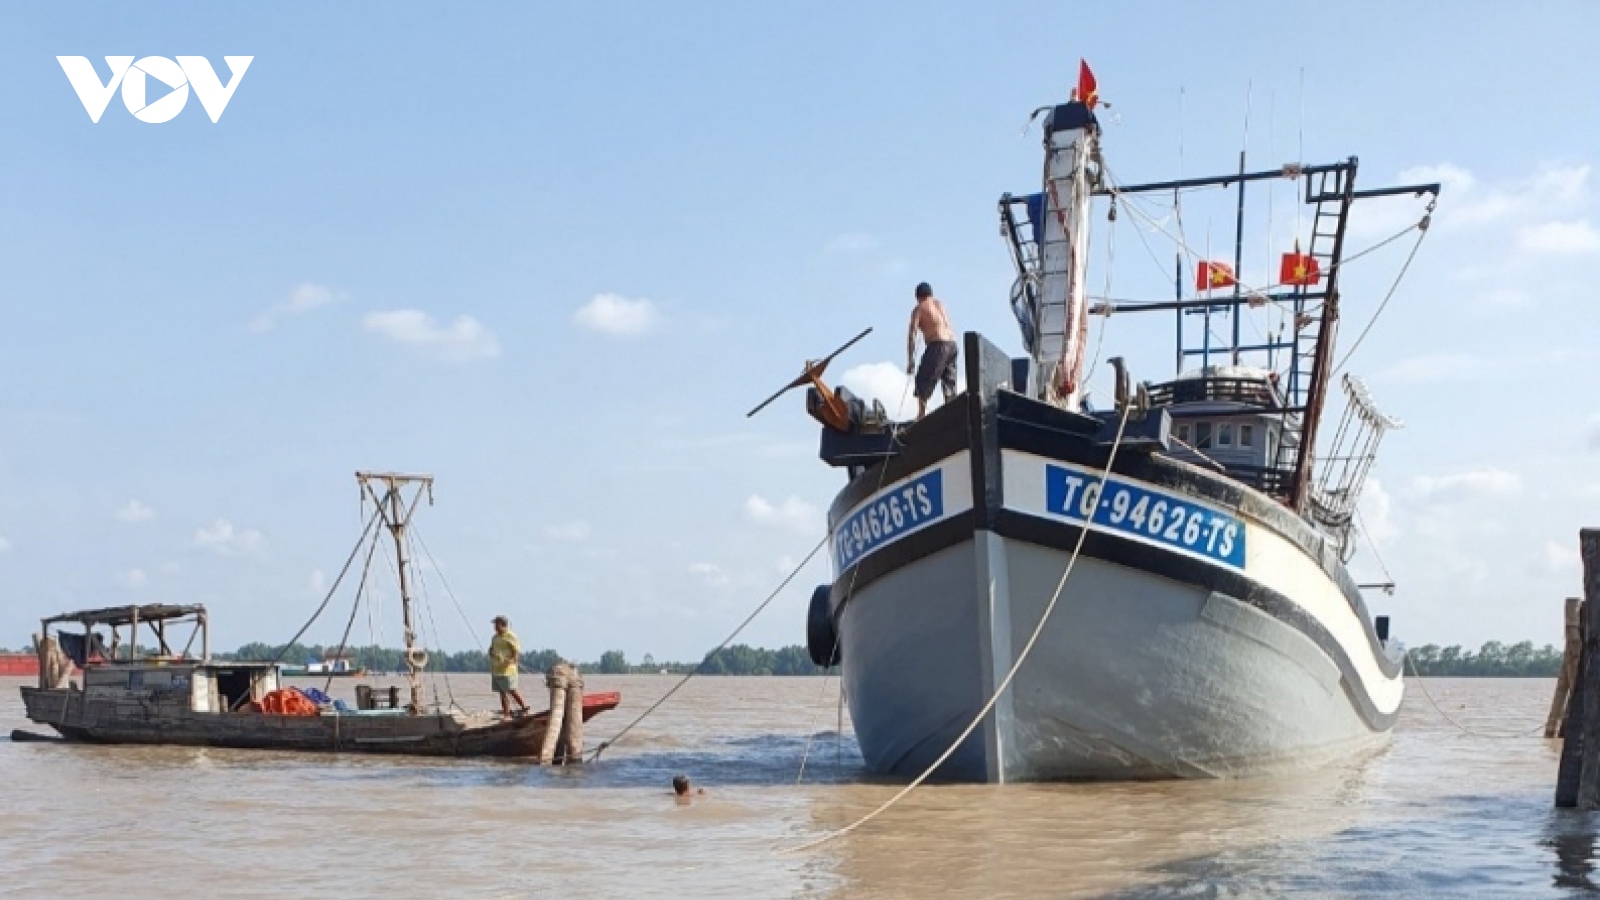 Đoàn tàu đánh cá theo Nghị định 67 ở tỉnh Tiền Giang “tiến thoái lưỡng nan”?